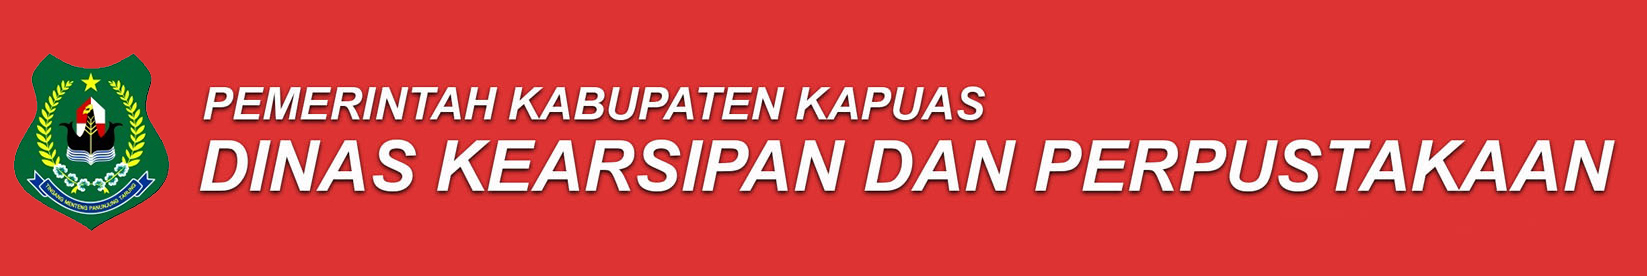 Dinas Kearsipan dan Perpustakaan Kabupaten Kapuas